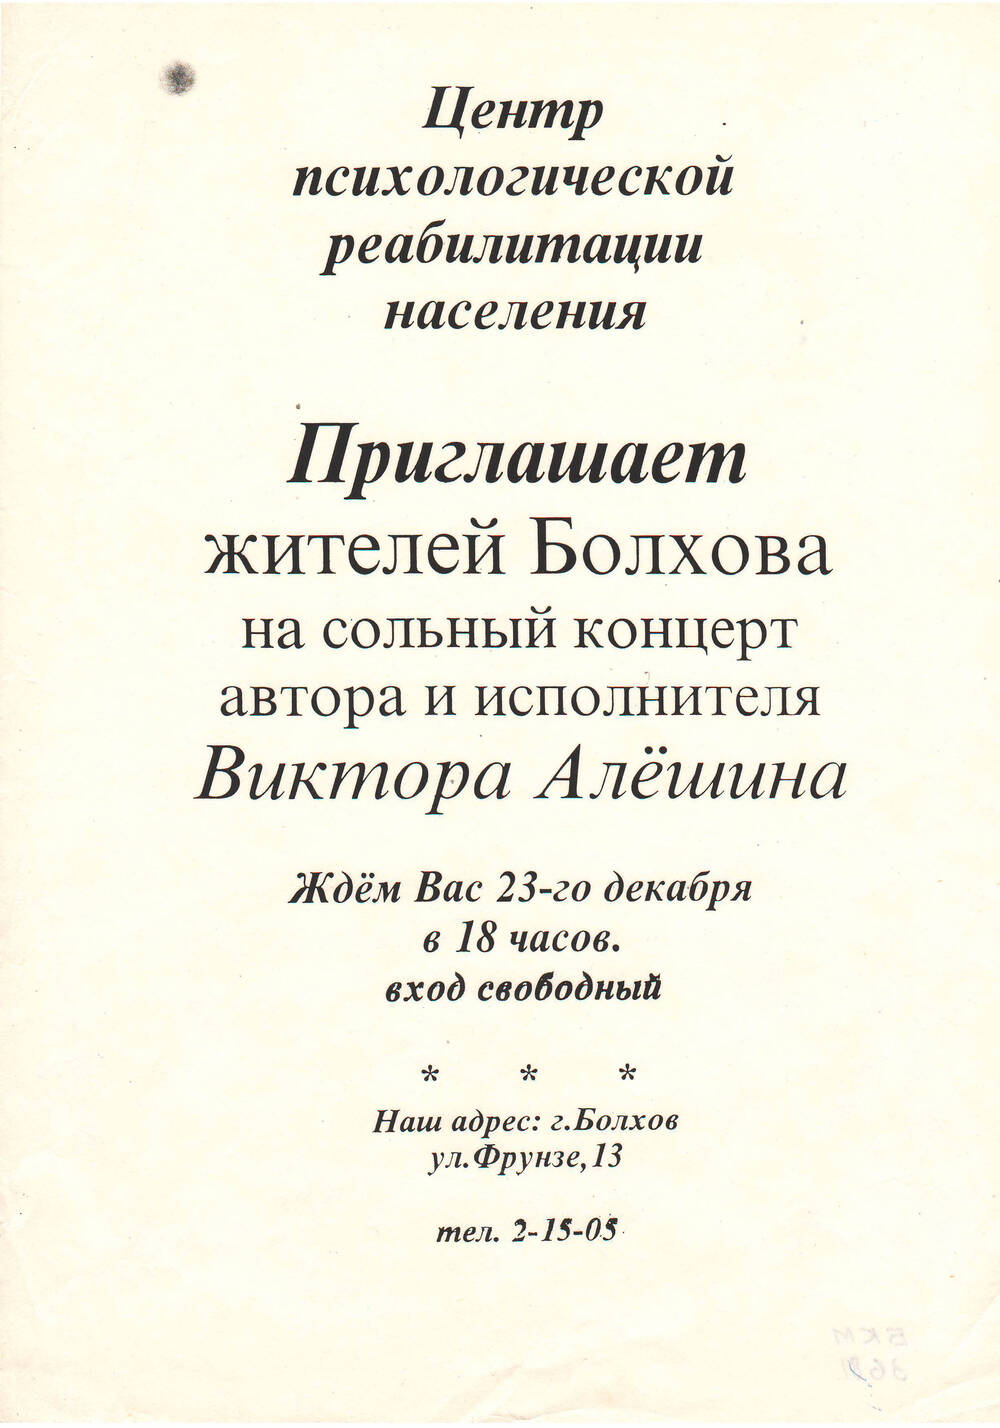 Приглашение в Центр психологической реабилитации жителей Болхова на концерт Виктора Алешина.